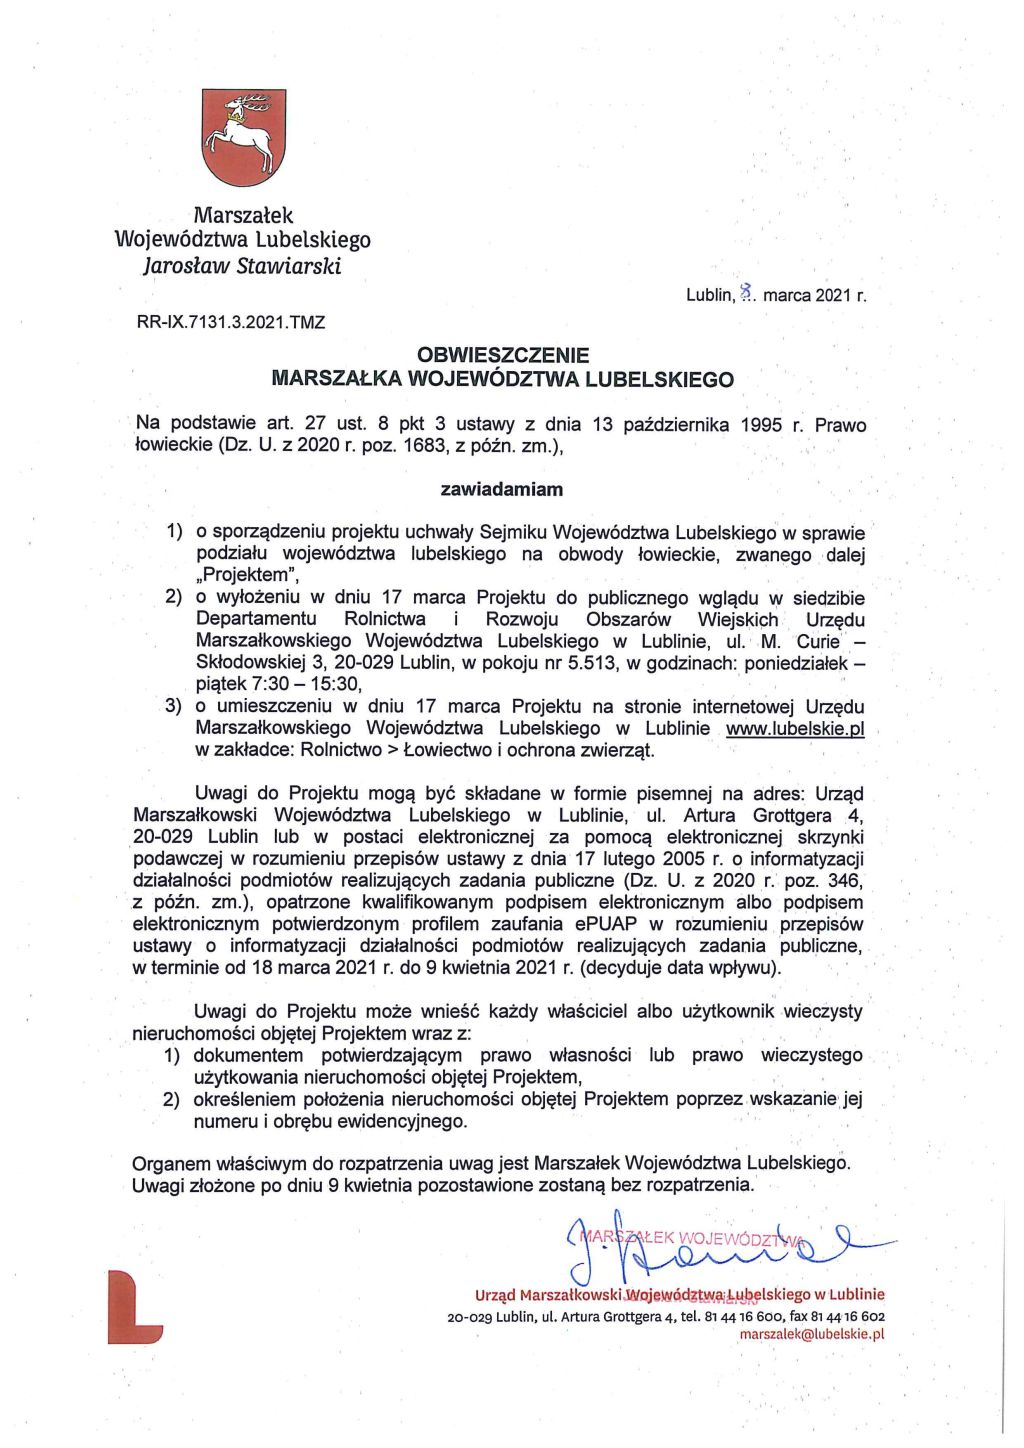 Obwieszczenie o projekcie uchwały w sprawie podziału województwa lubelskiego na obwody łowieckie